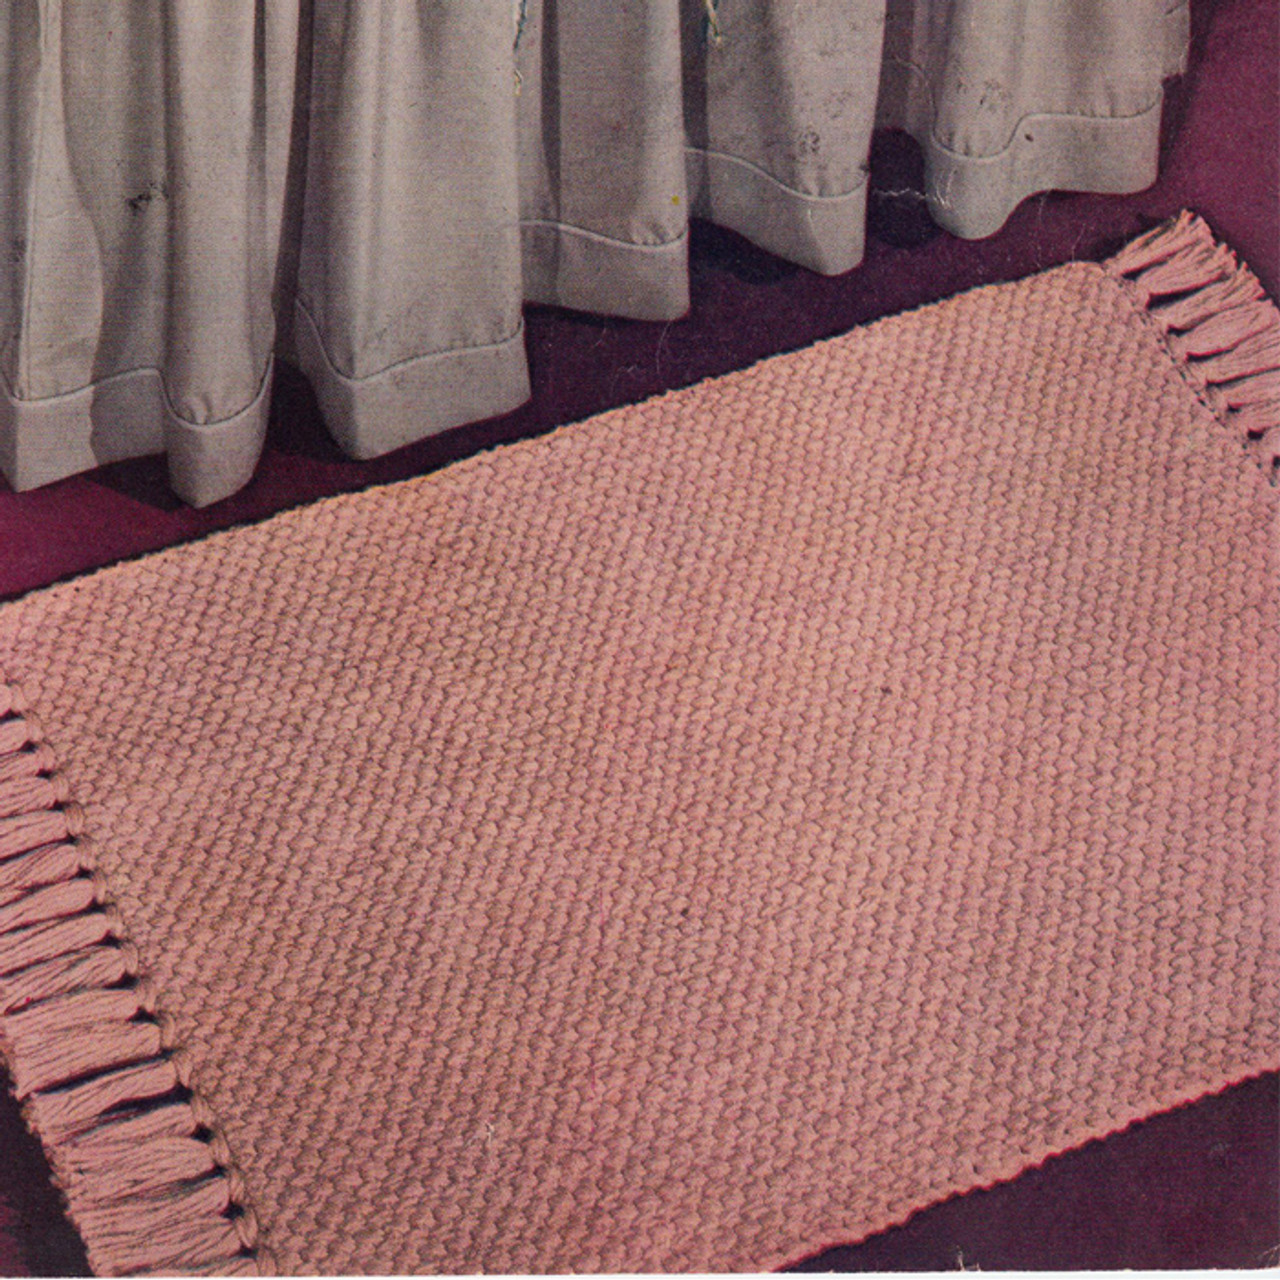 Crochet Area Rug Pattern, Basket Weave